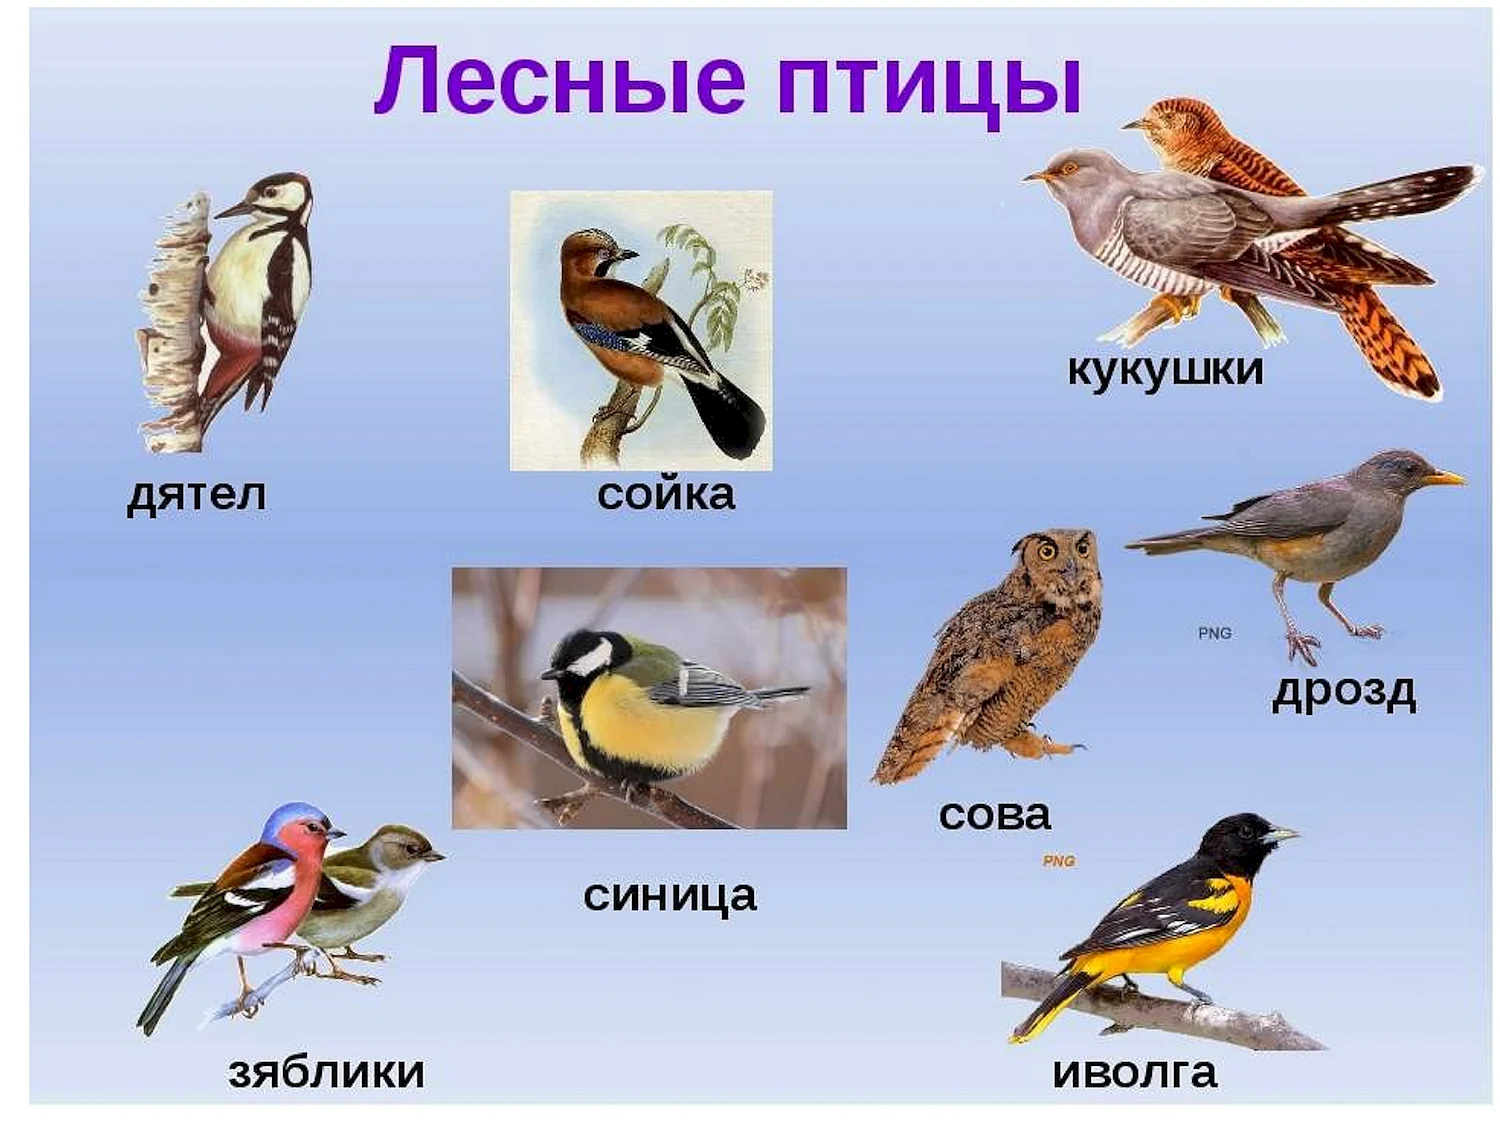 птицы центральной россии фото